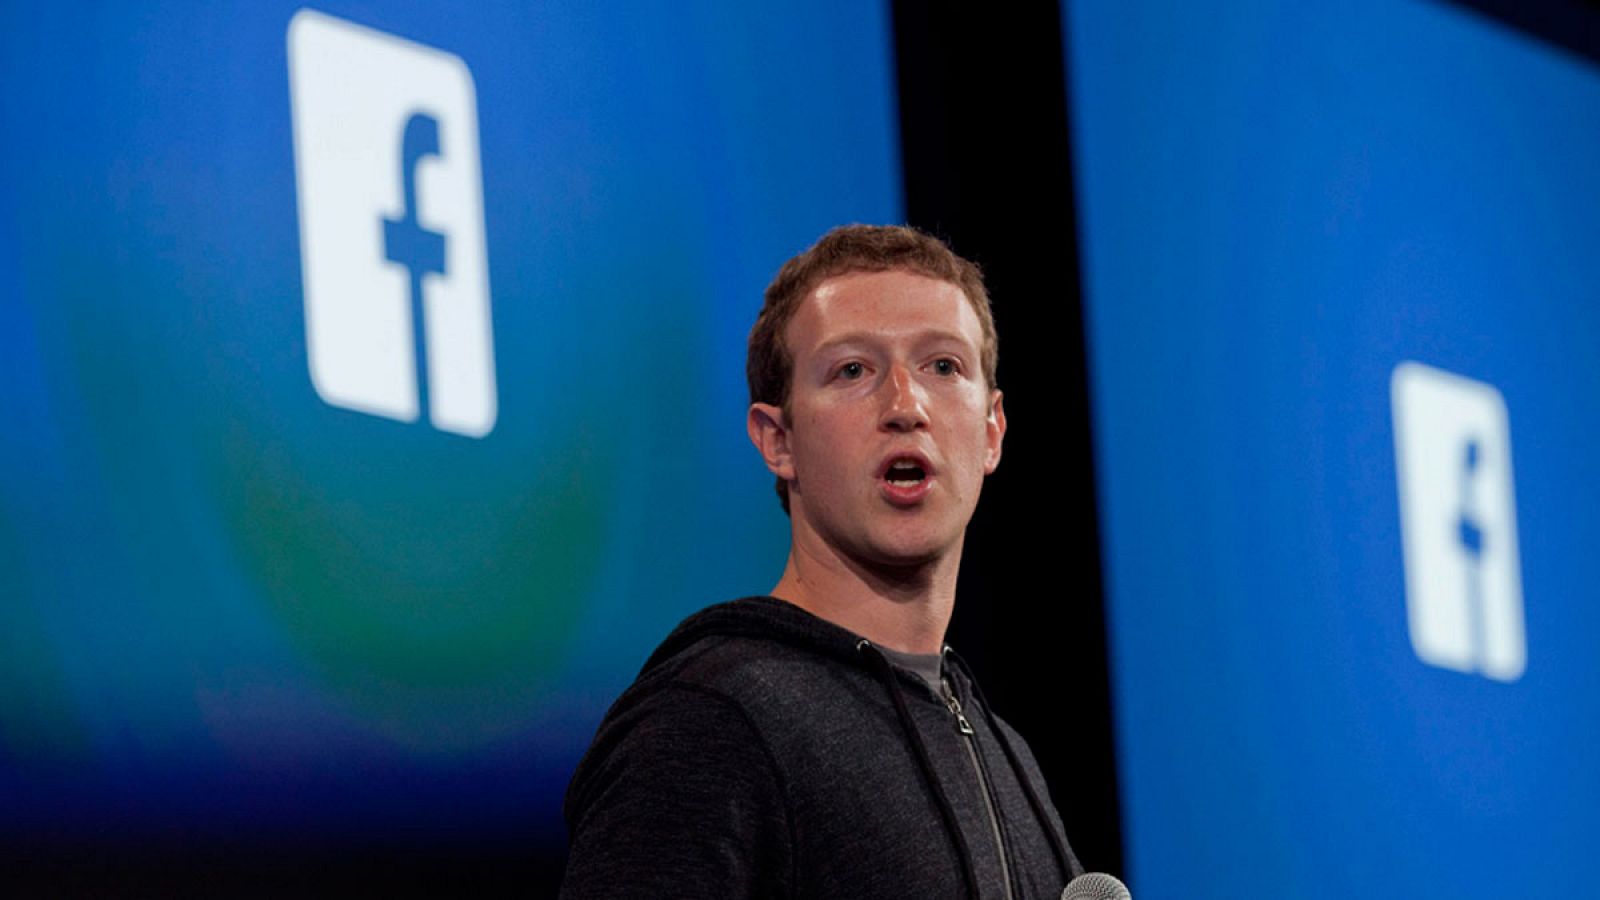 El creador de Facebook, Marc Zuckerberg, en una imagen de archivo en abril de 2013.